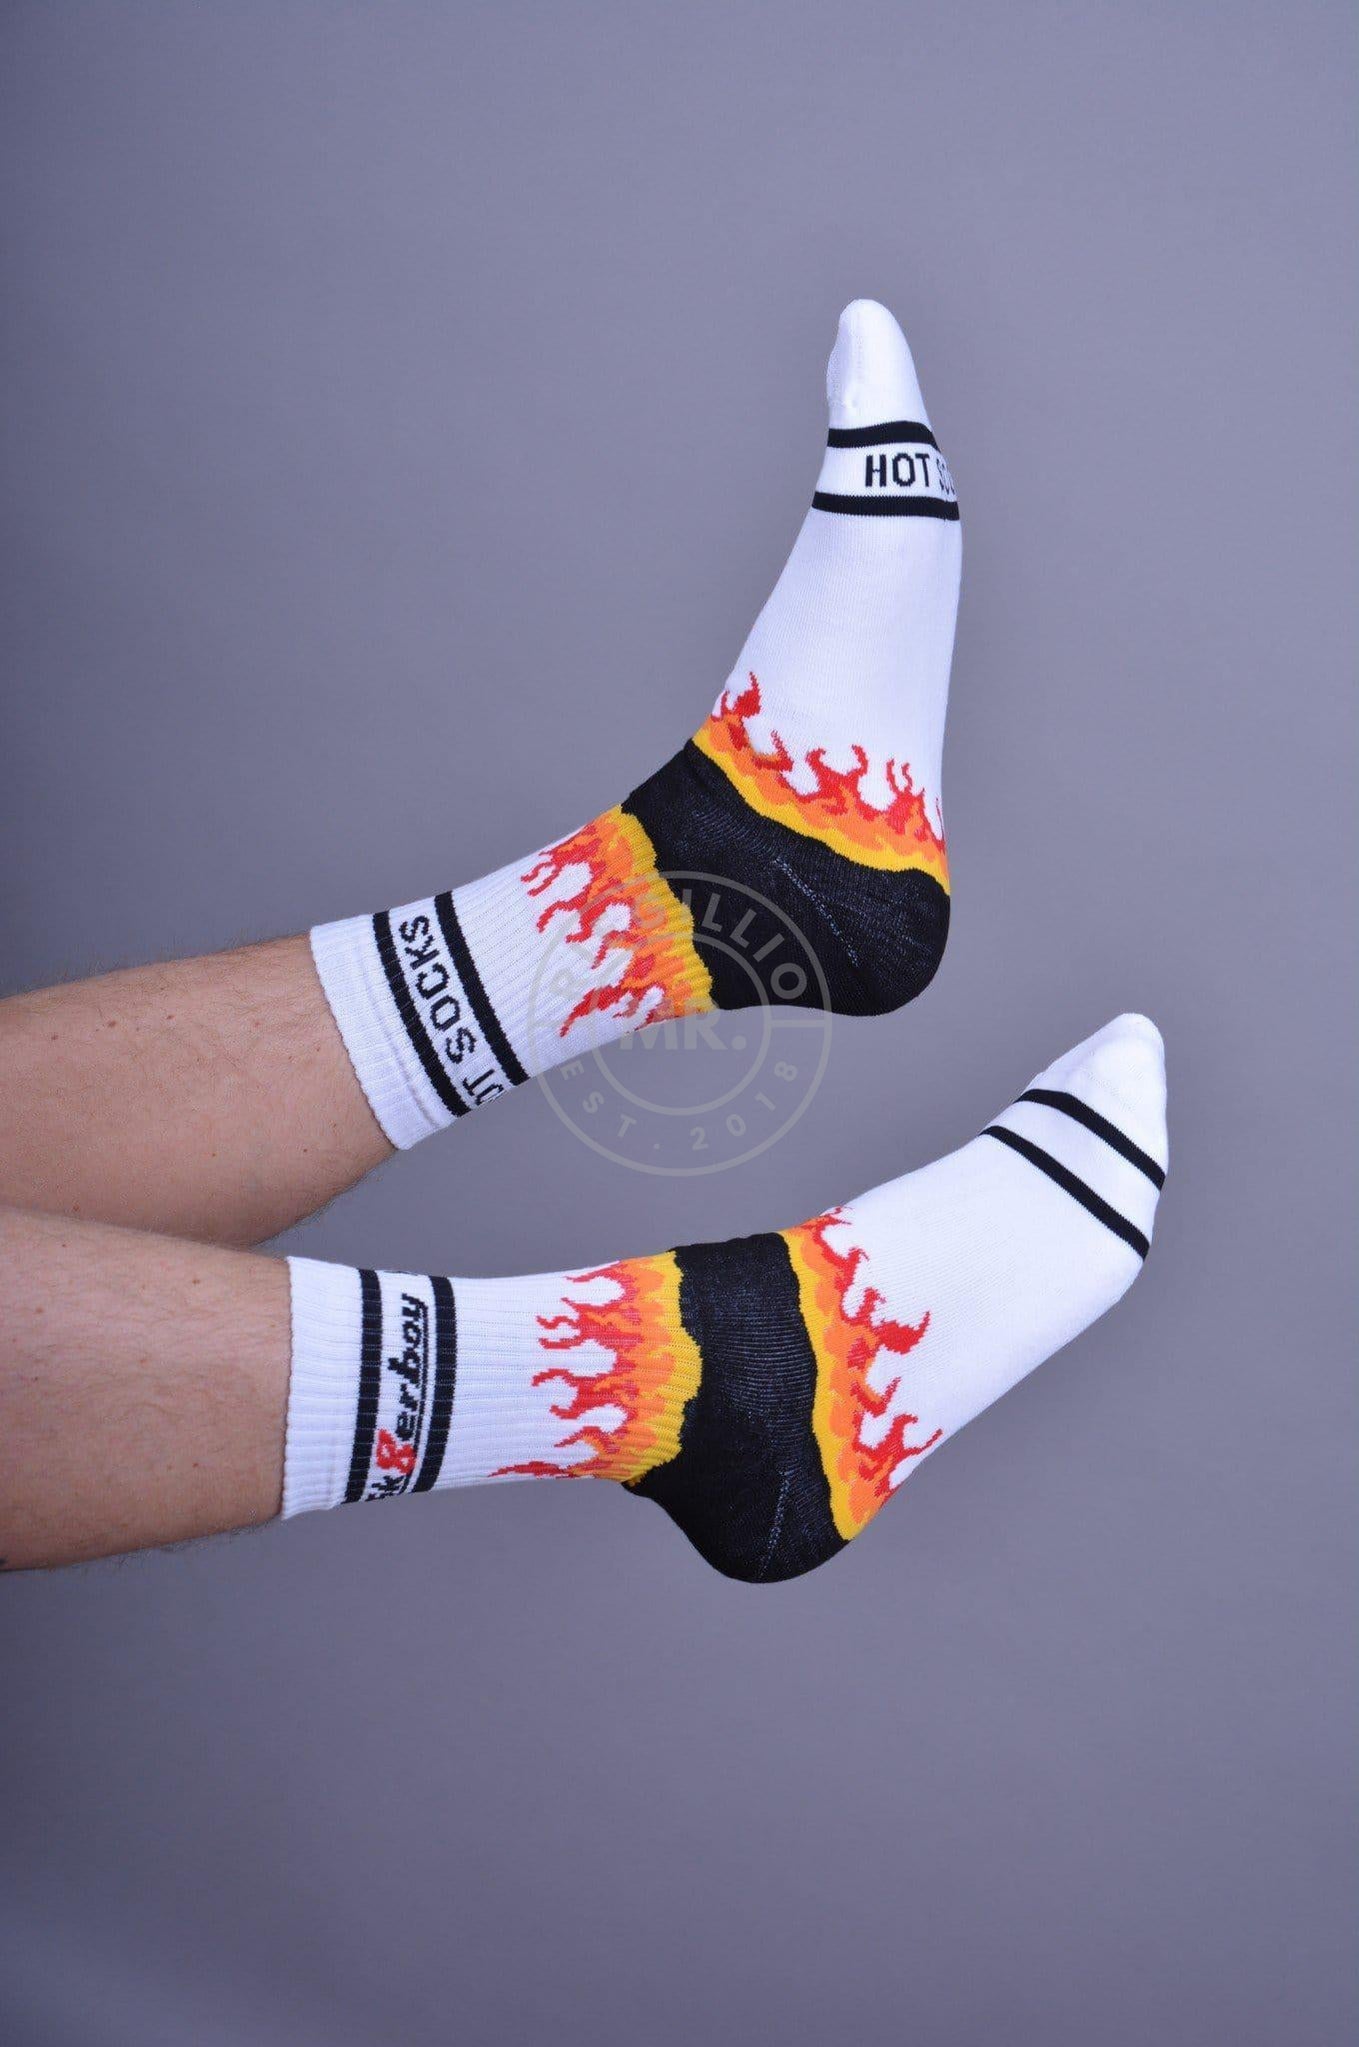 Sk8erboy HOT Socks White-at MR. Riegillio